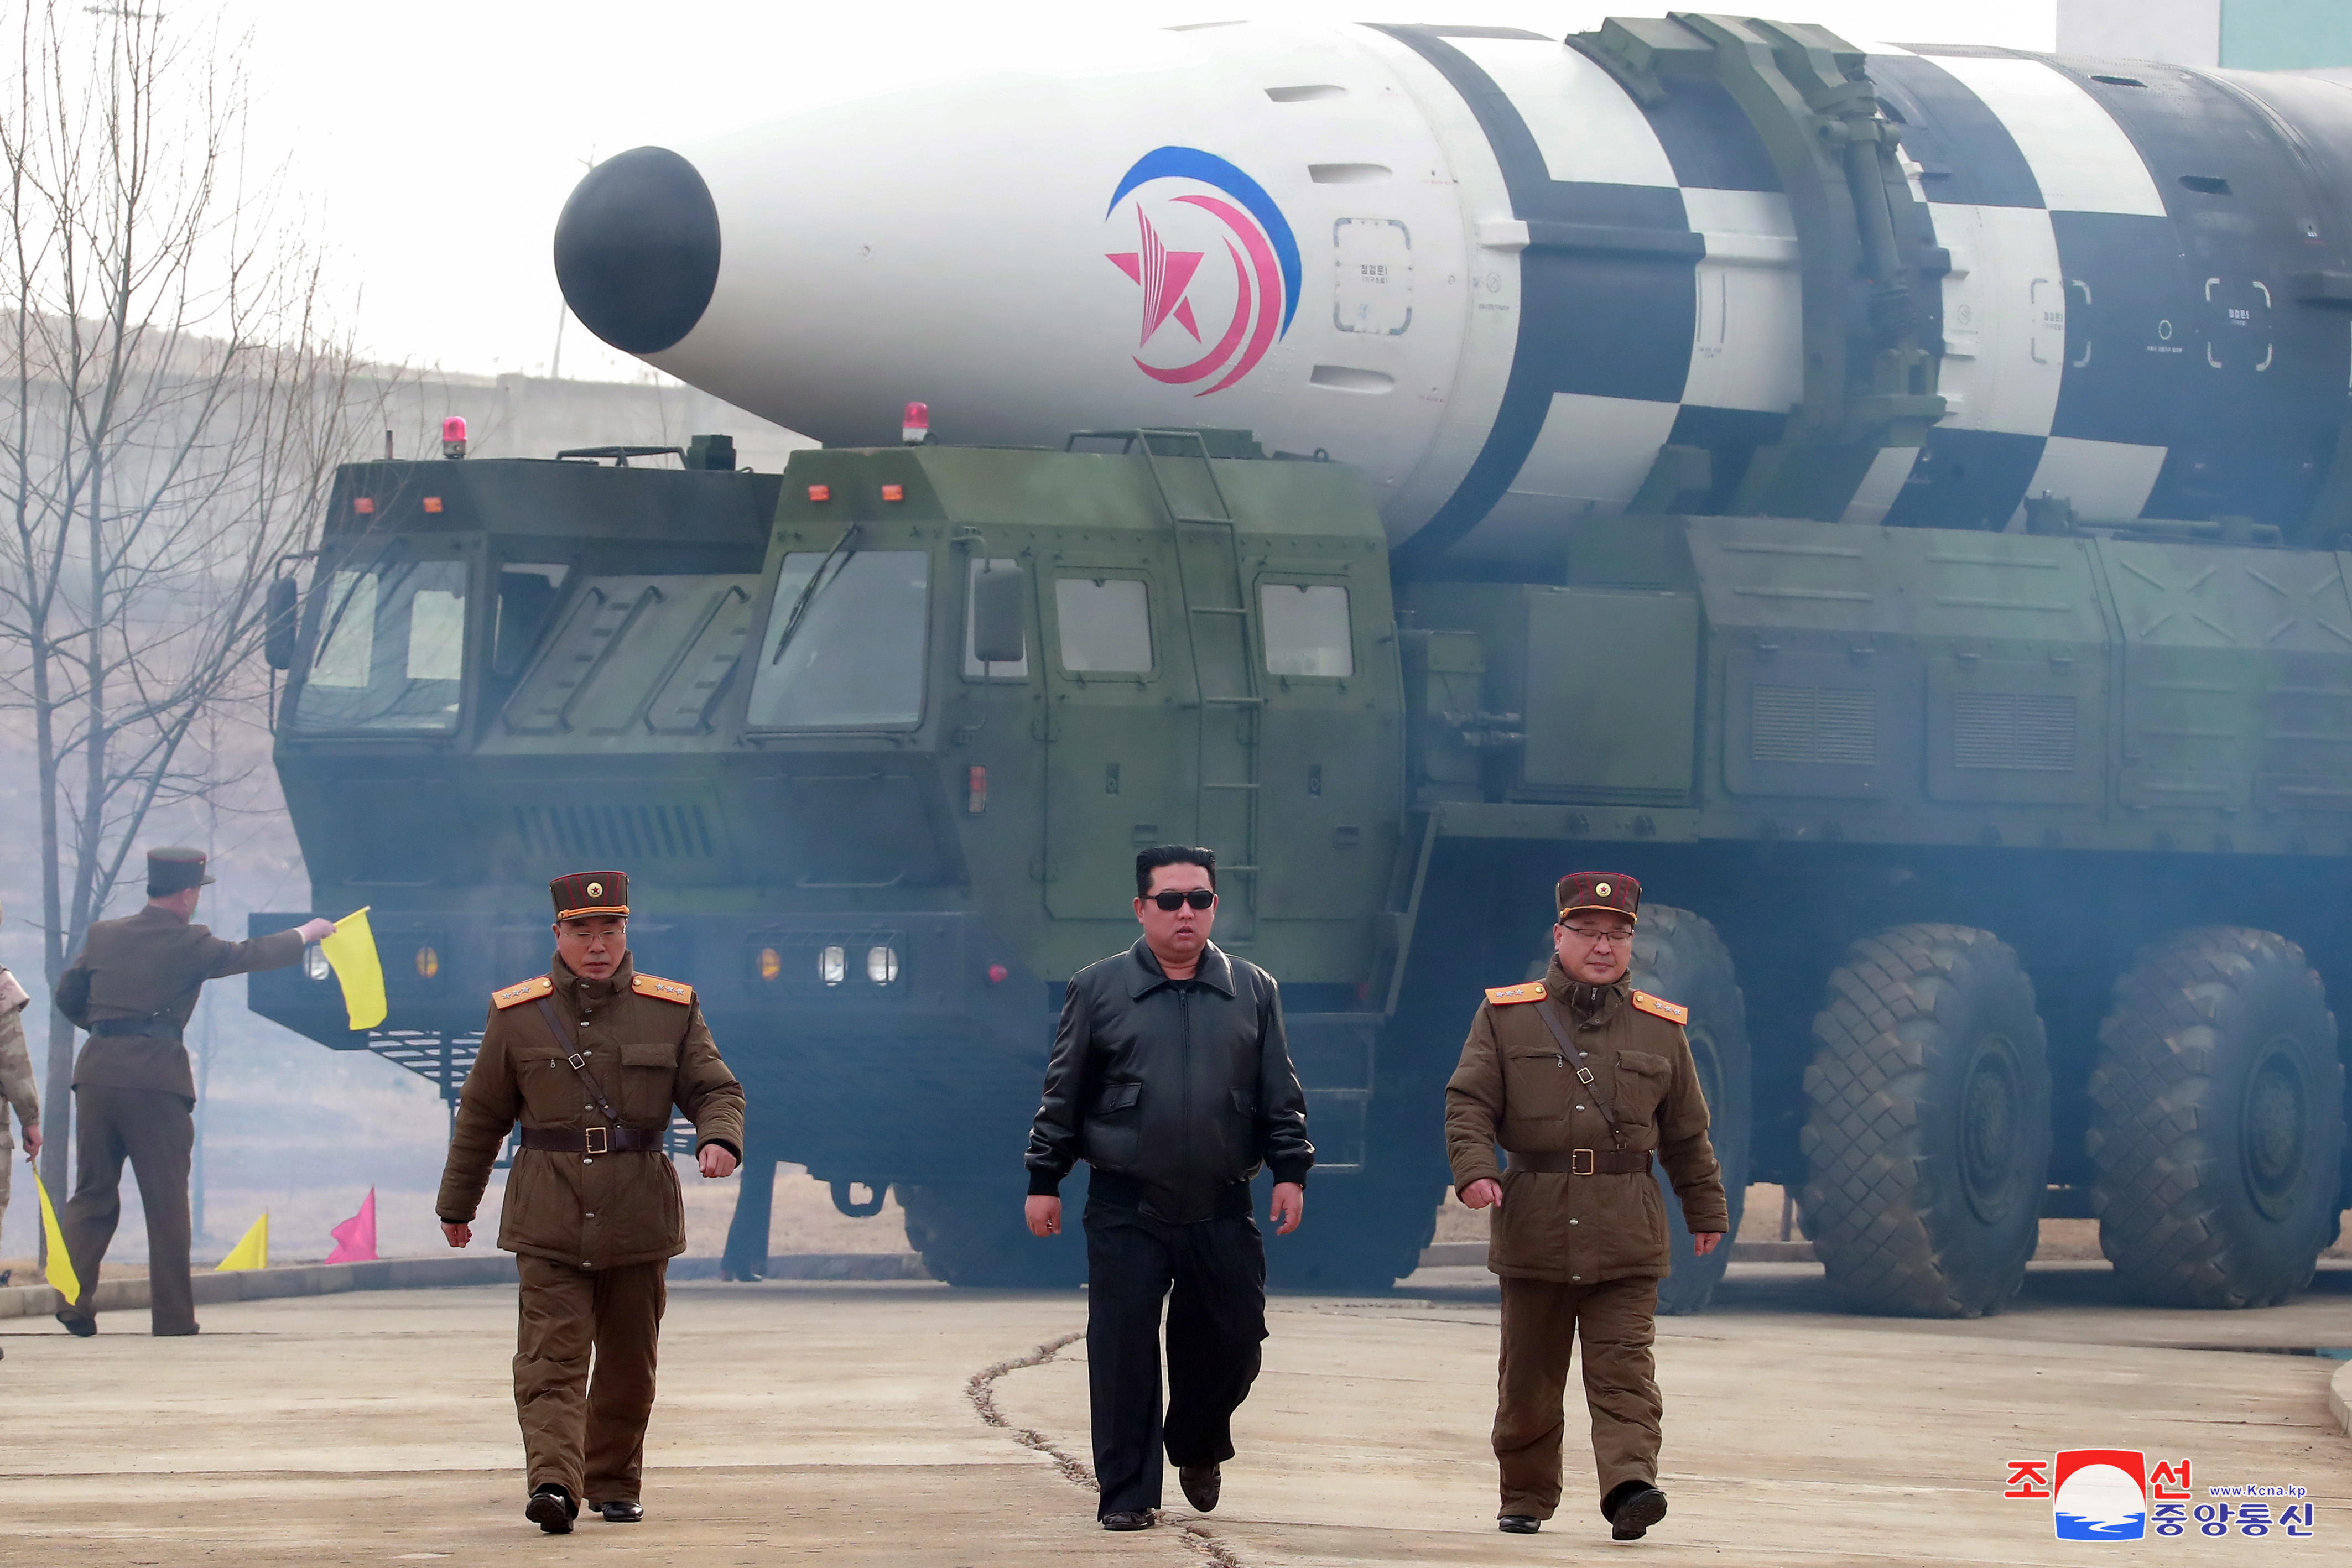 Северна Корея изстреля междуконтинентална балистична ракета. Тяа обаче не е